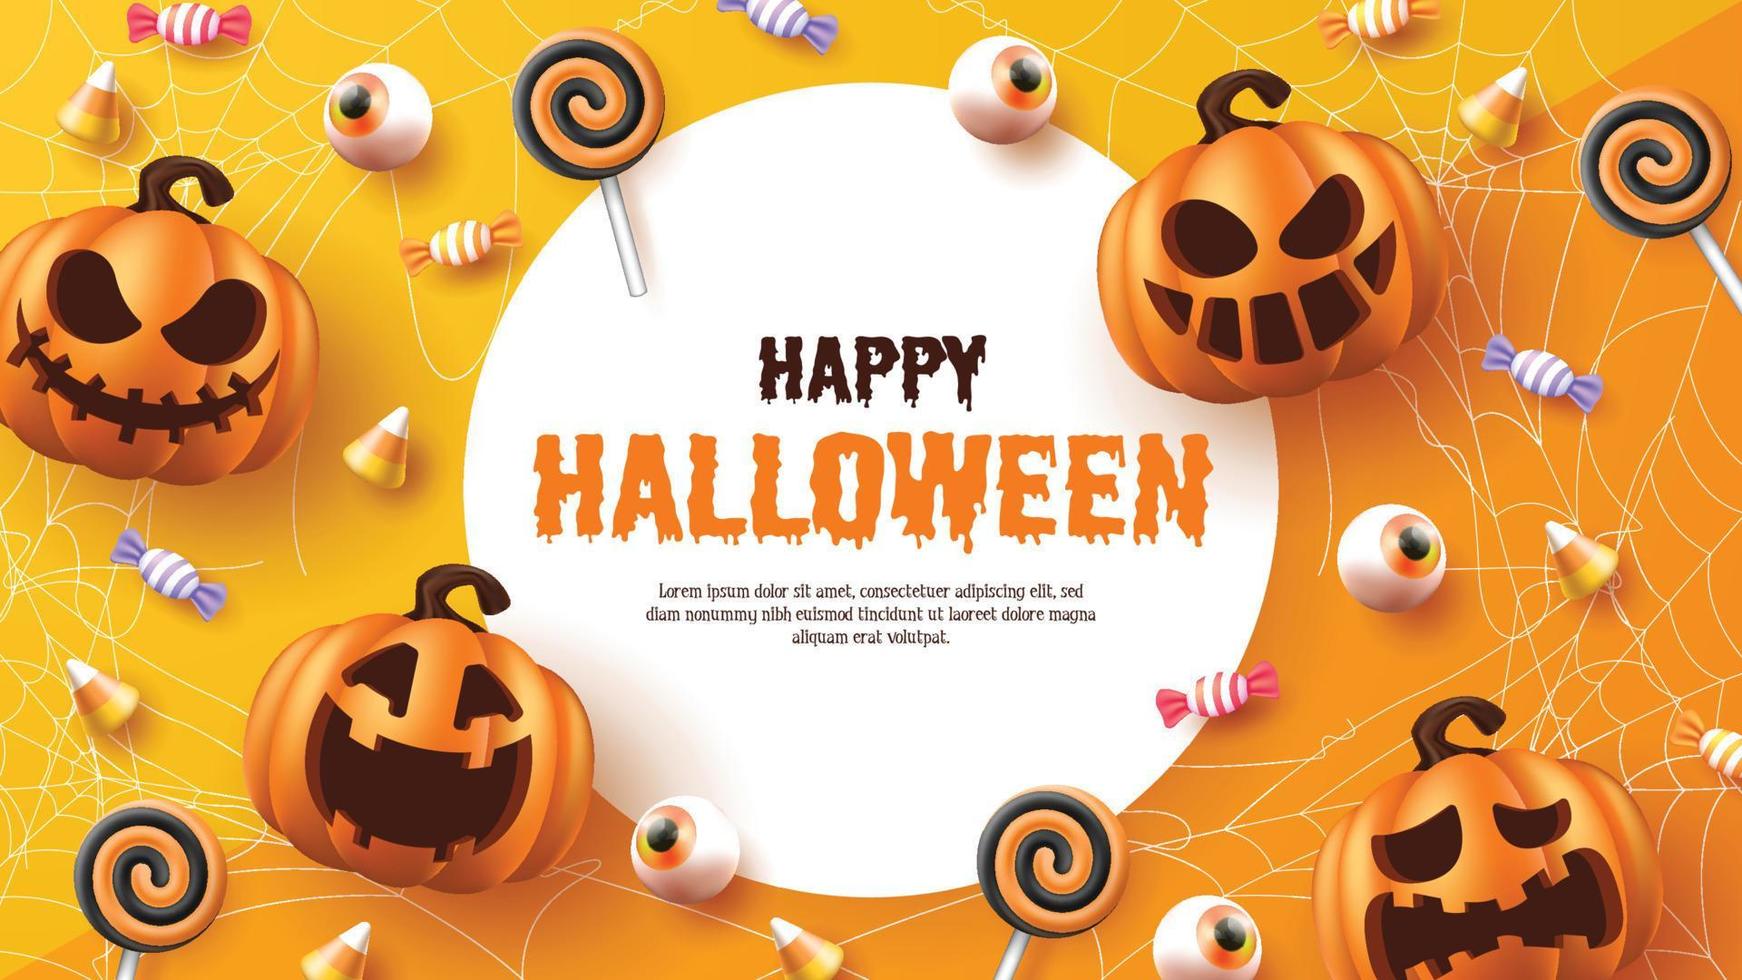 felice Halloween. illustrazione vettoriale di halloween con zucche di halloween ed elementi di halloween.